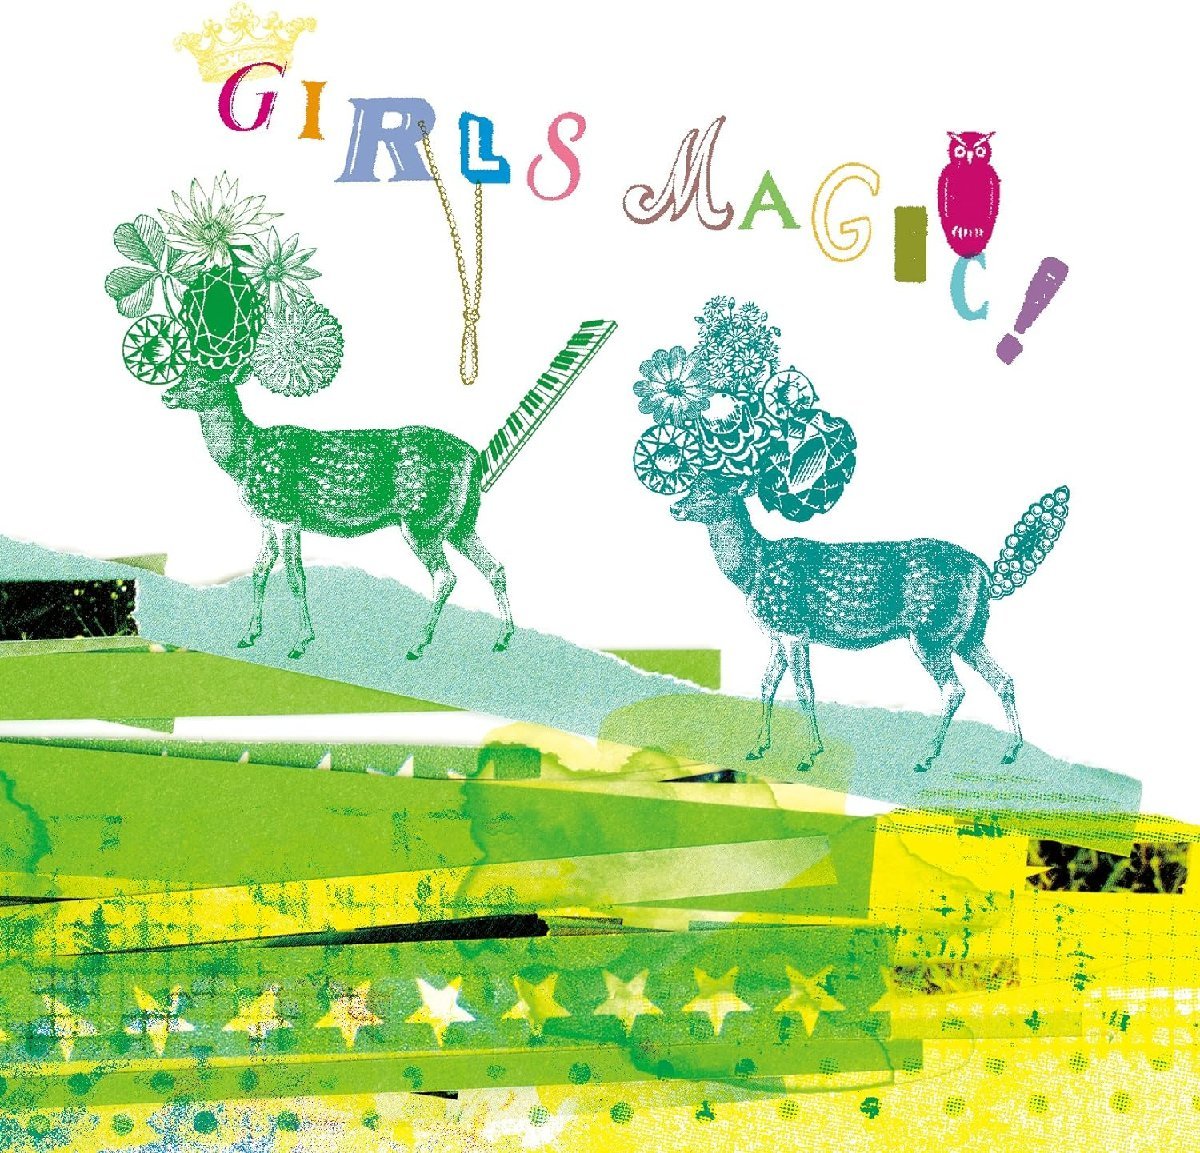 【中古】[448] CD GIRLS MAGIC! 森ガールと音楽 オムニバス 新品ケース交換 送料無料_画像1